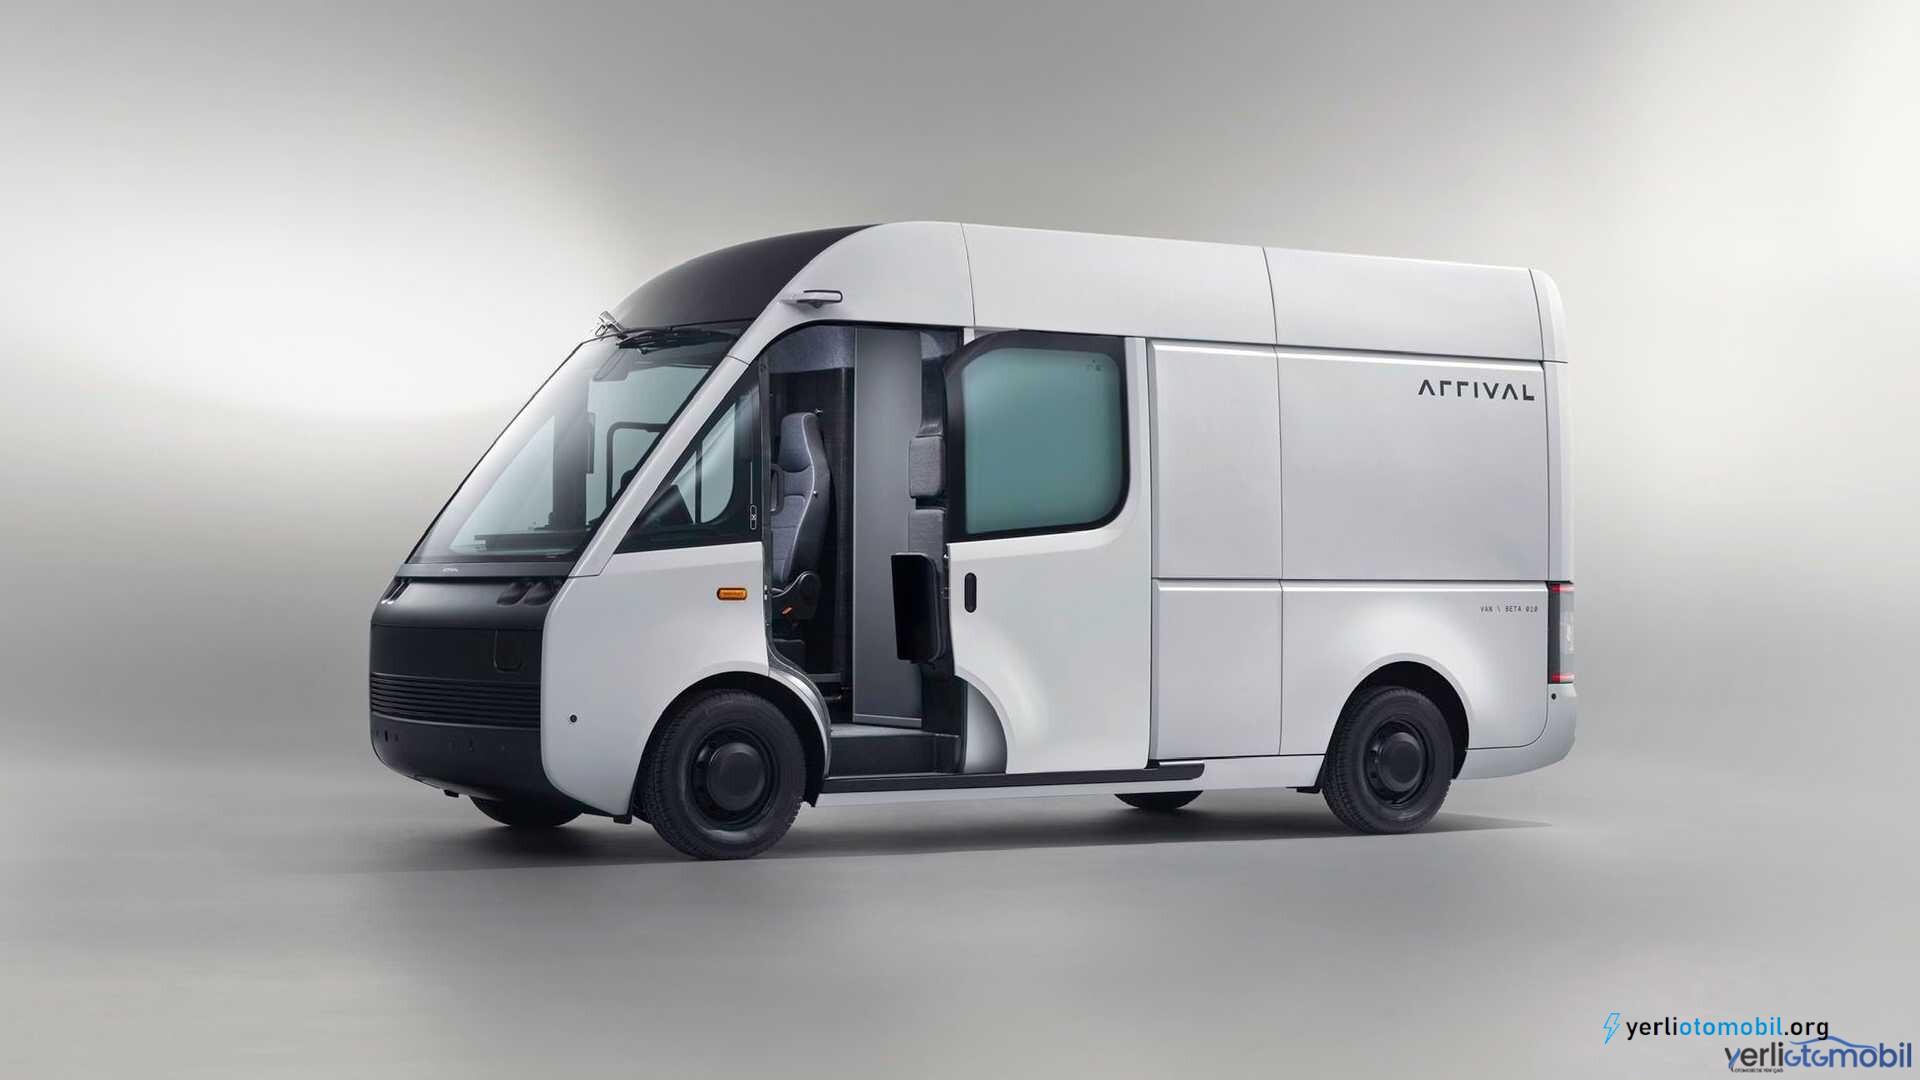 Elektrikli kargo aracı Arrival Van hakkında detaylar yazımızdadır. Arrival Van için yol denemeleri bu yaz başlayacak, üretimi ise 2022'de yapılması bekleniyor.